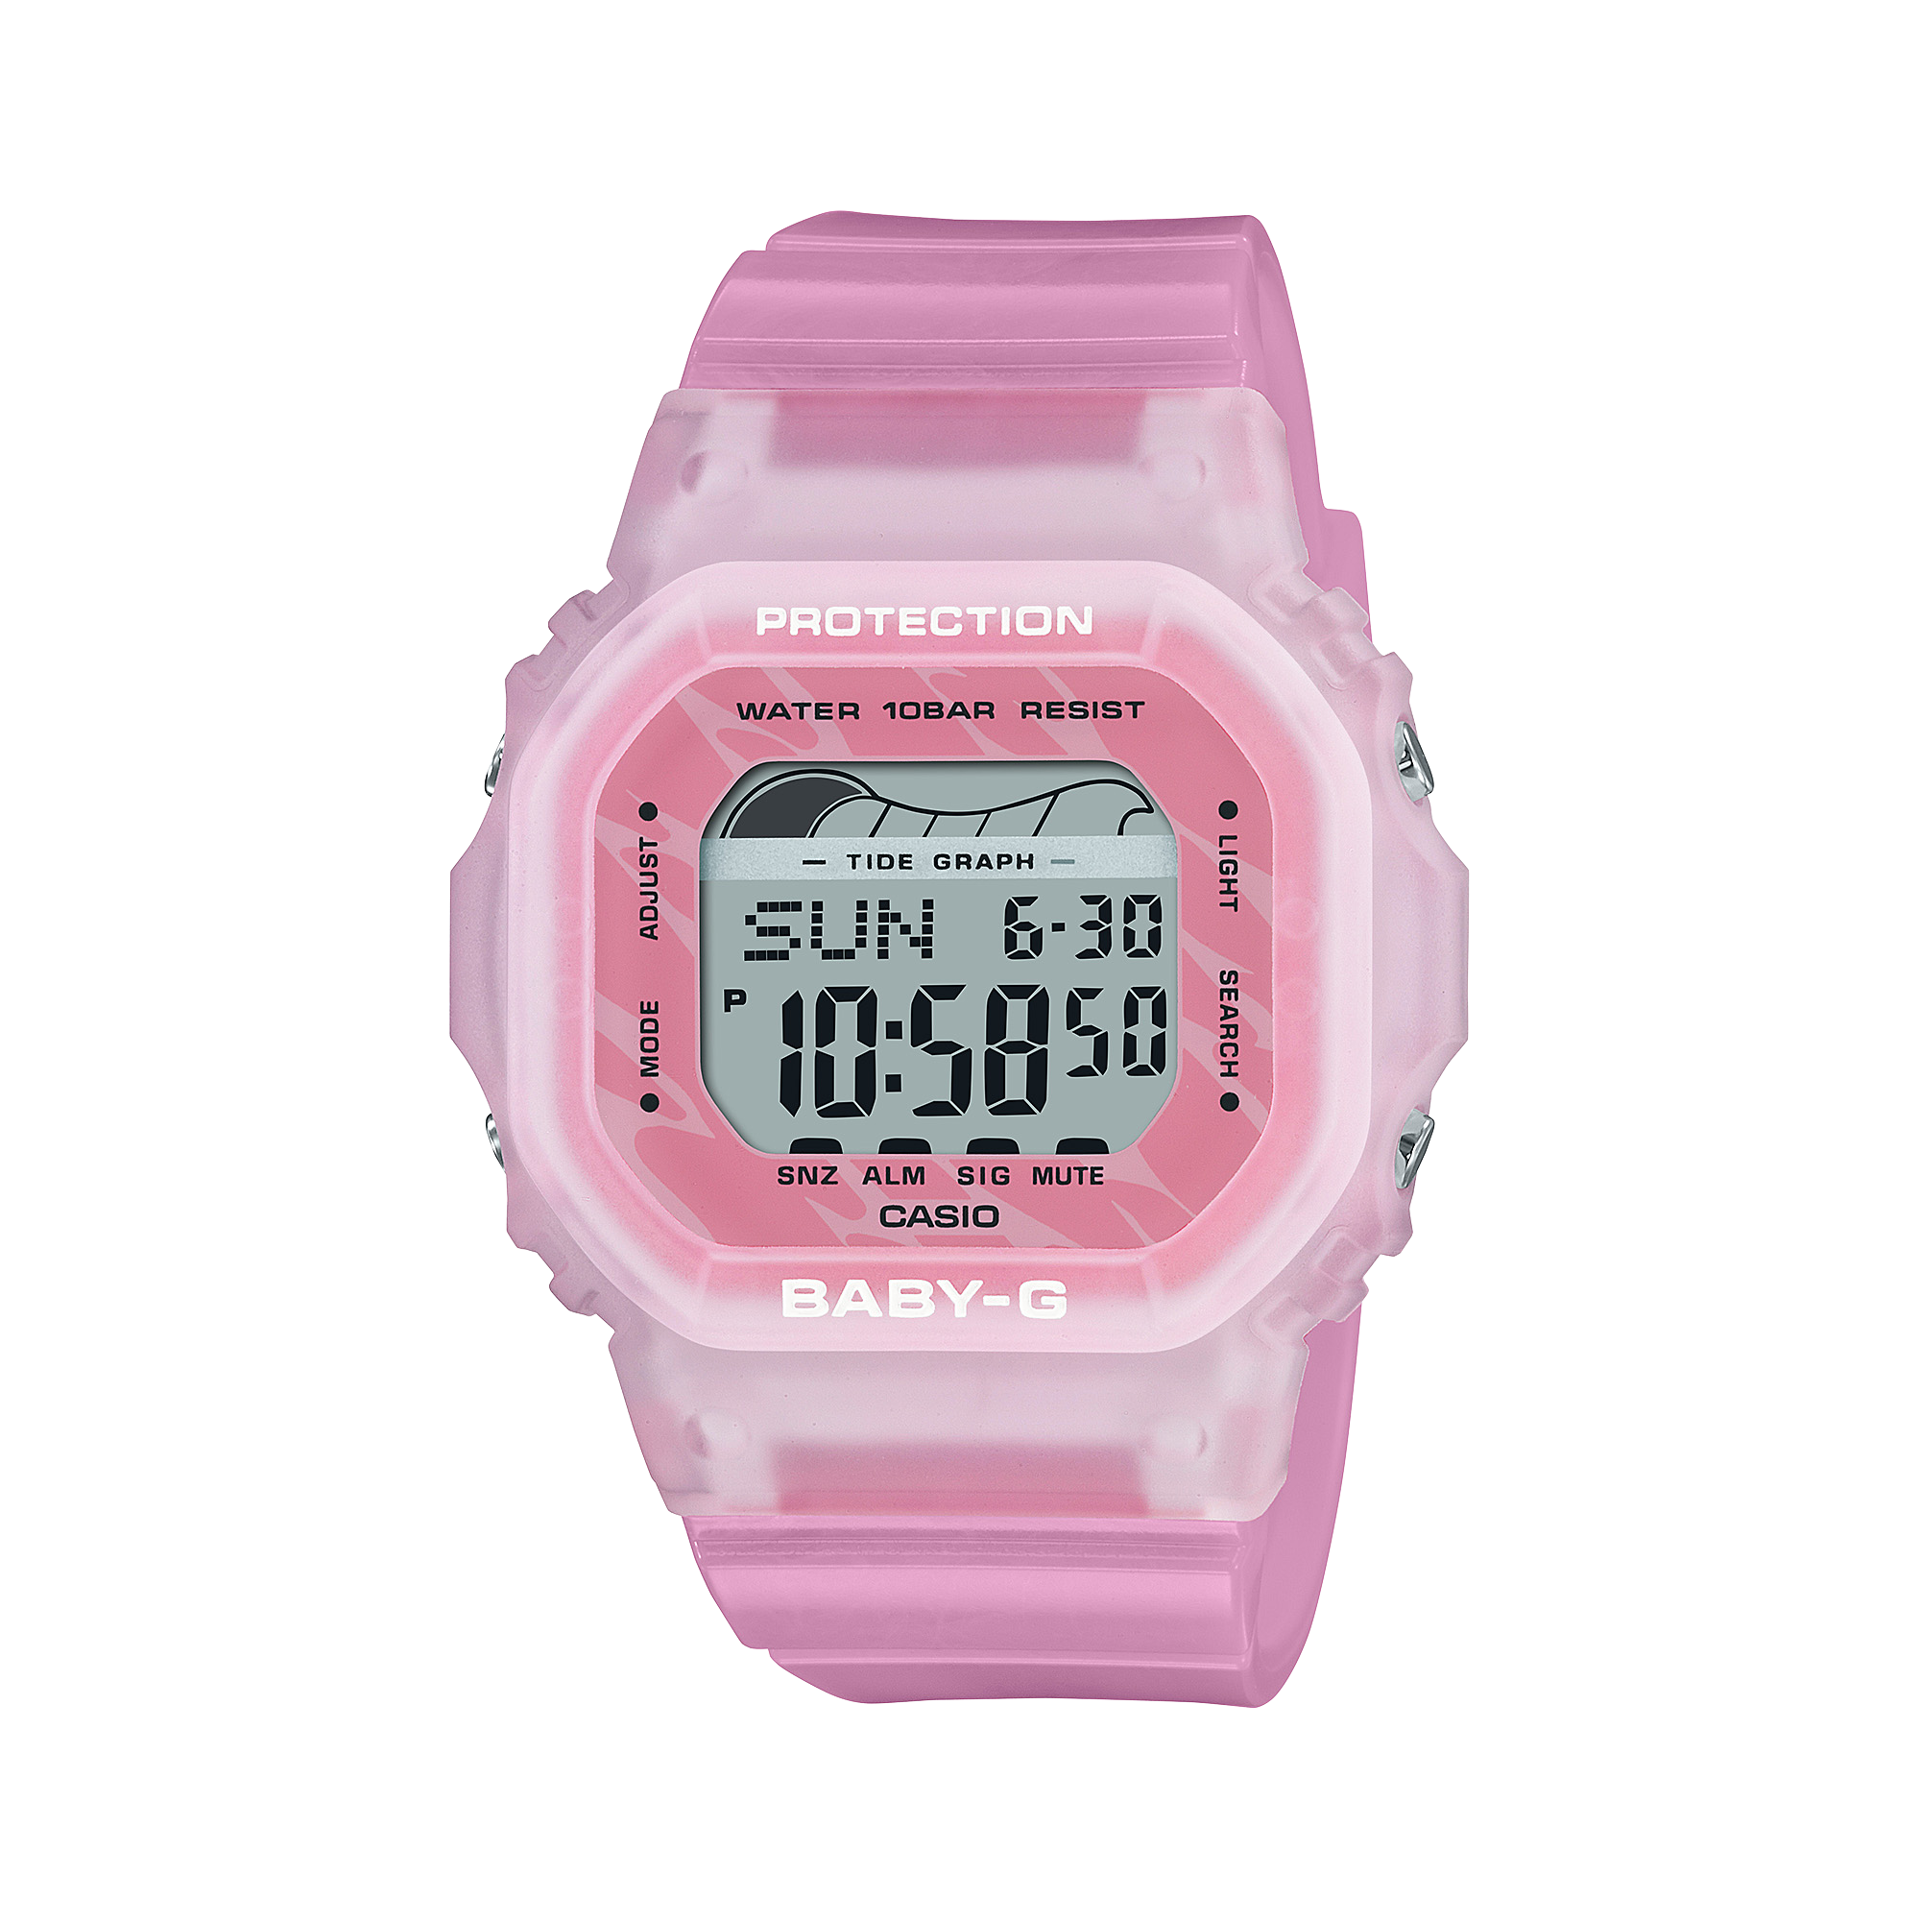 Shop Casio Ladies' Watch Baby-G Digital Blx 565 Series, BLX-565S-4DR |  Dragon Mart UAE